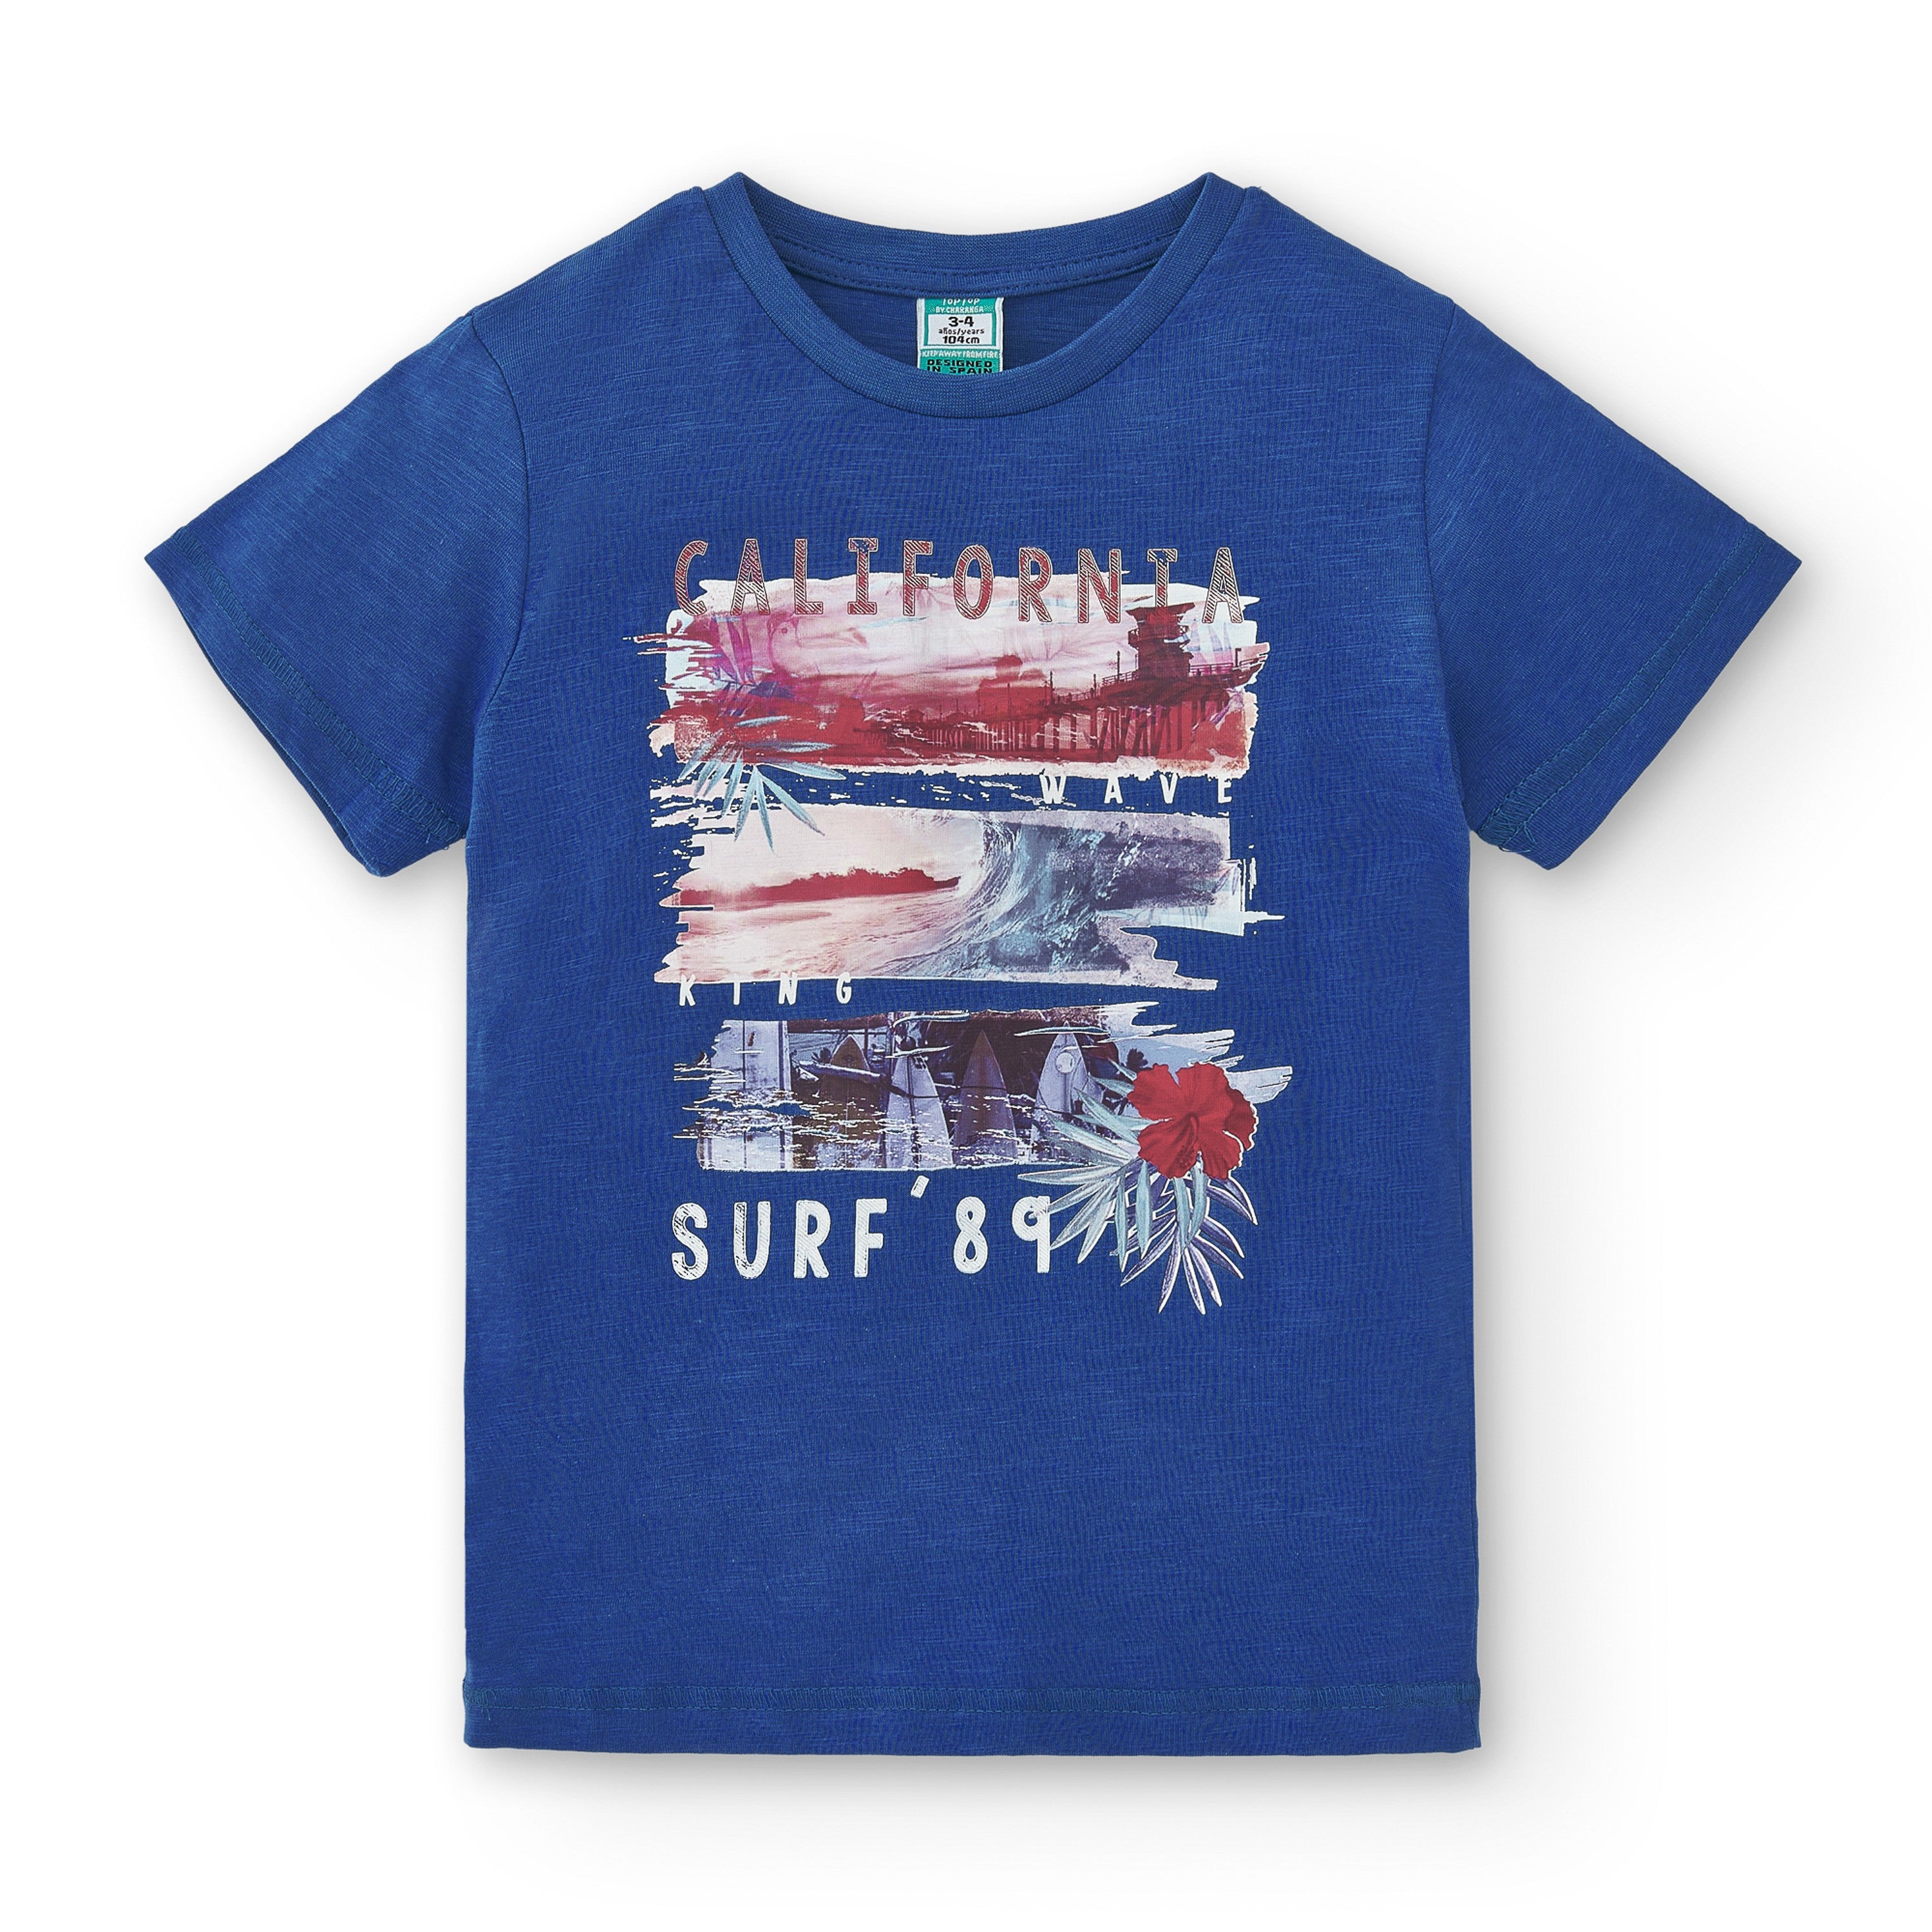 Camiseta de niño azul VERANO/Outlet